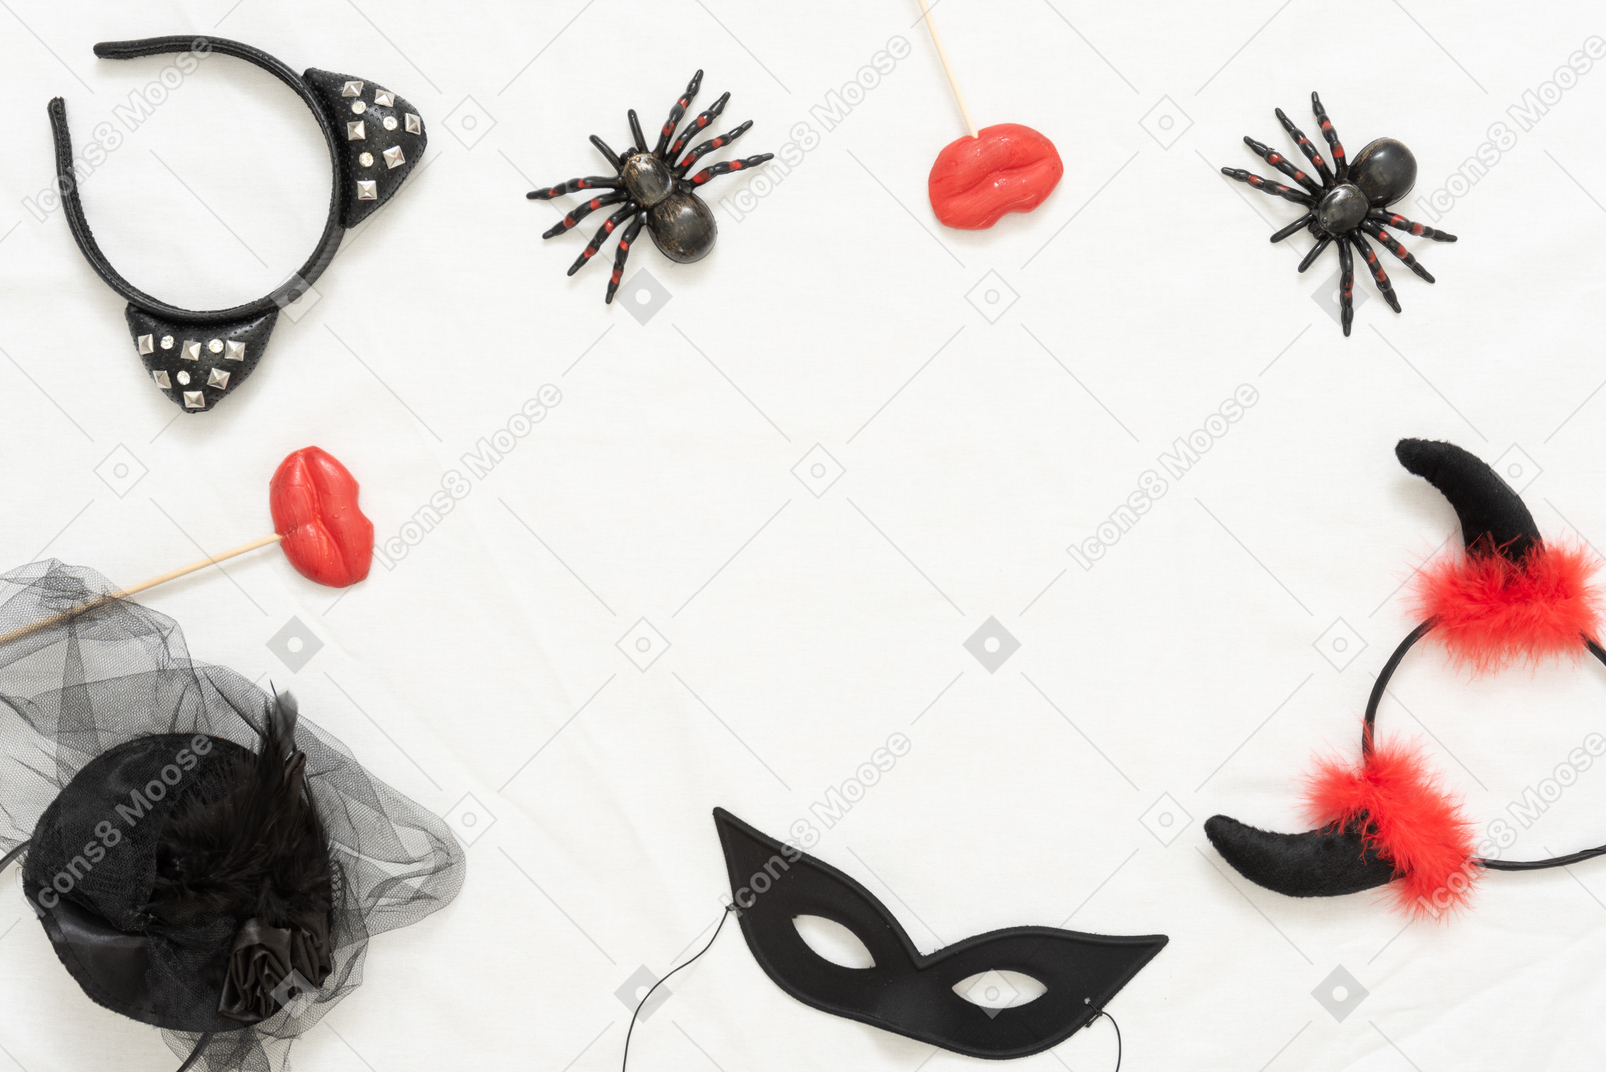 다른 할로윈 머리띠, 장난감 거미 및 검은 마스크